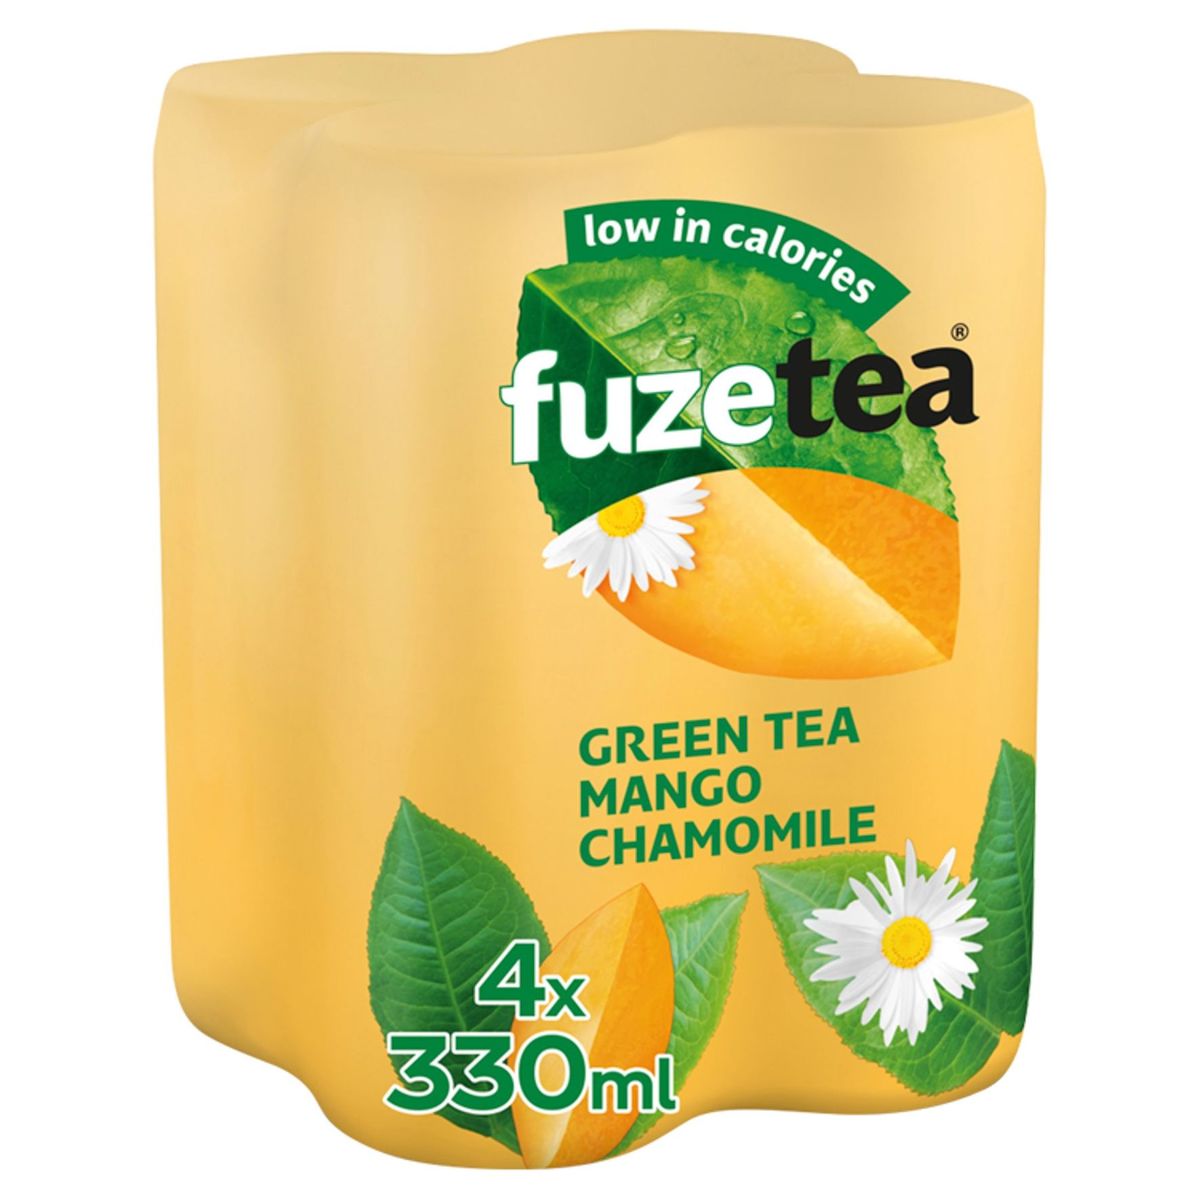 Fuze Tea Green Tea Mango Chamomile Iced Tea canette 4 x 330 ml